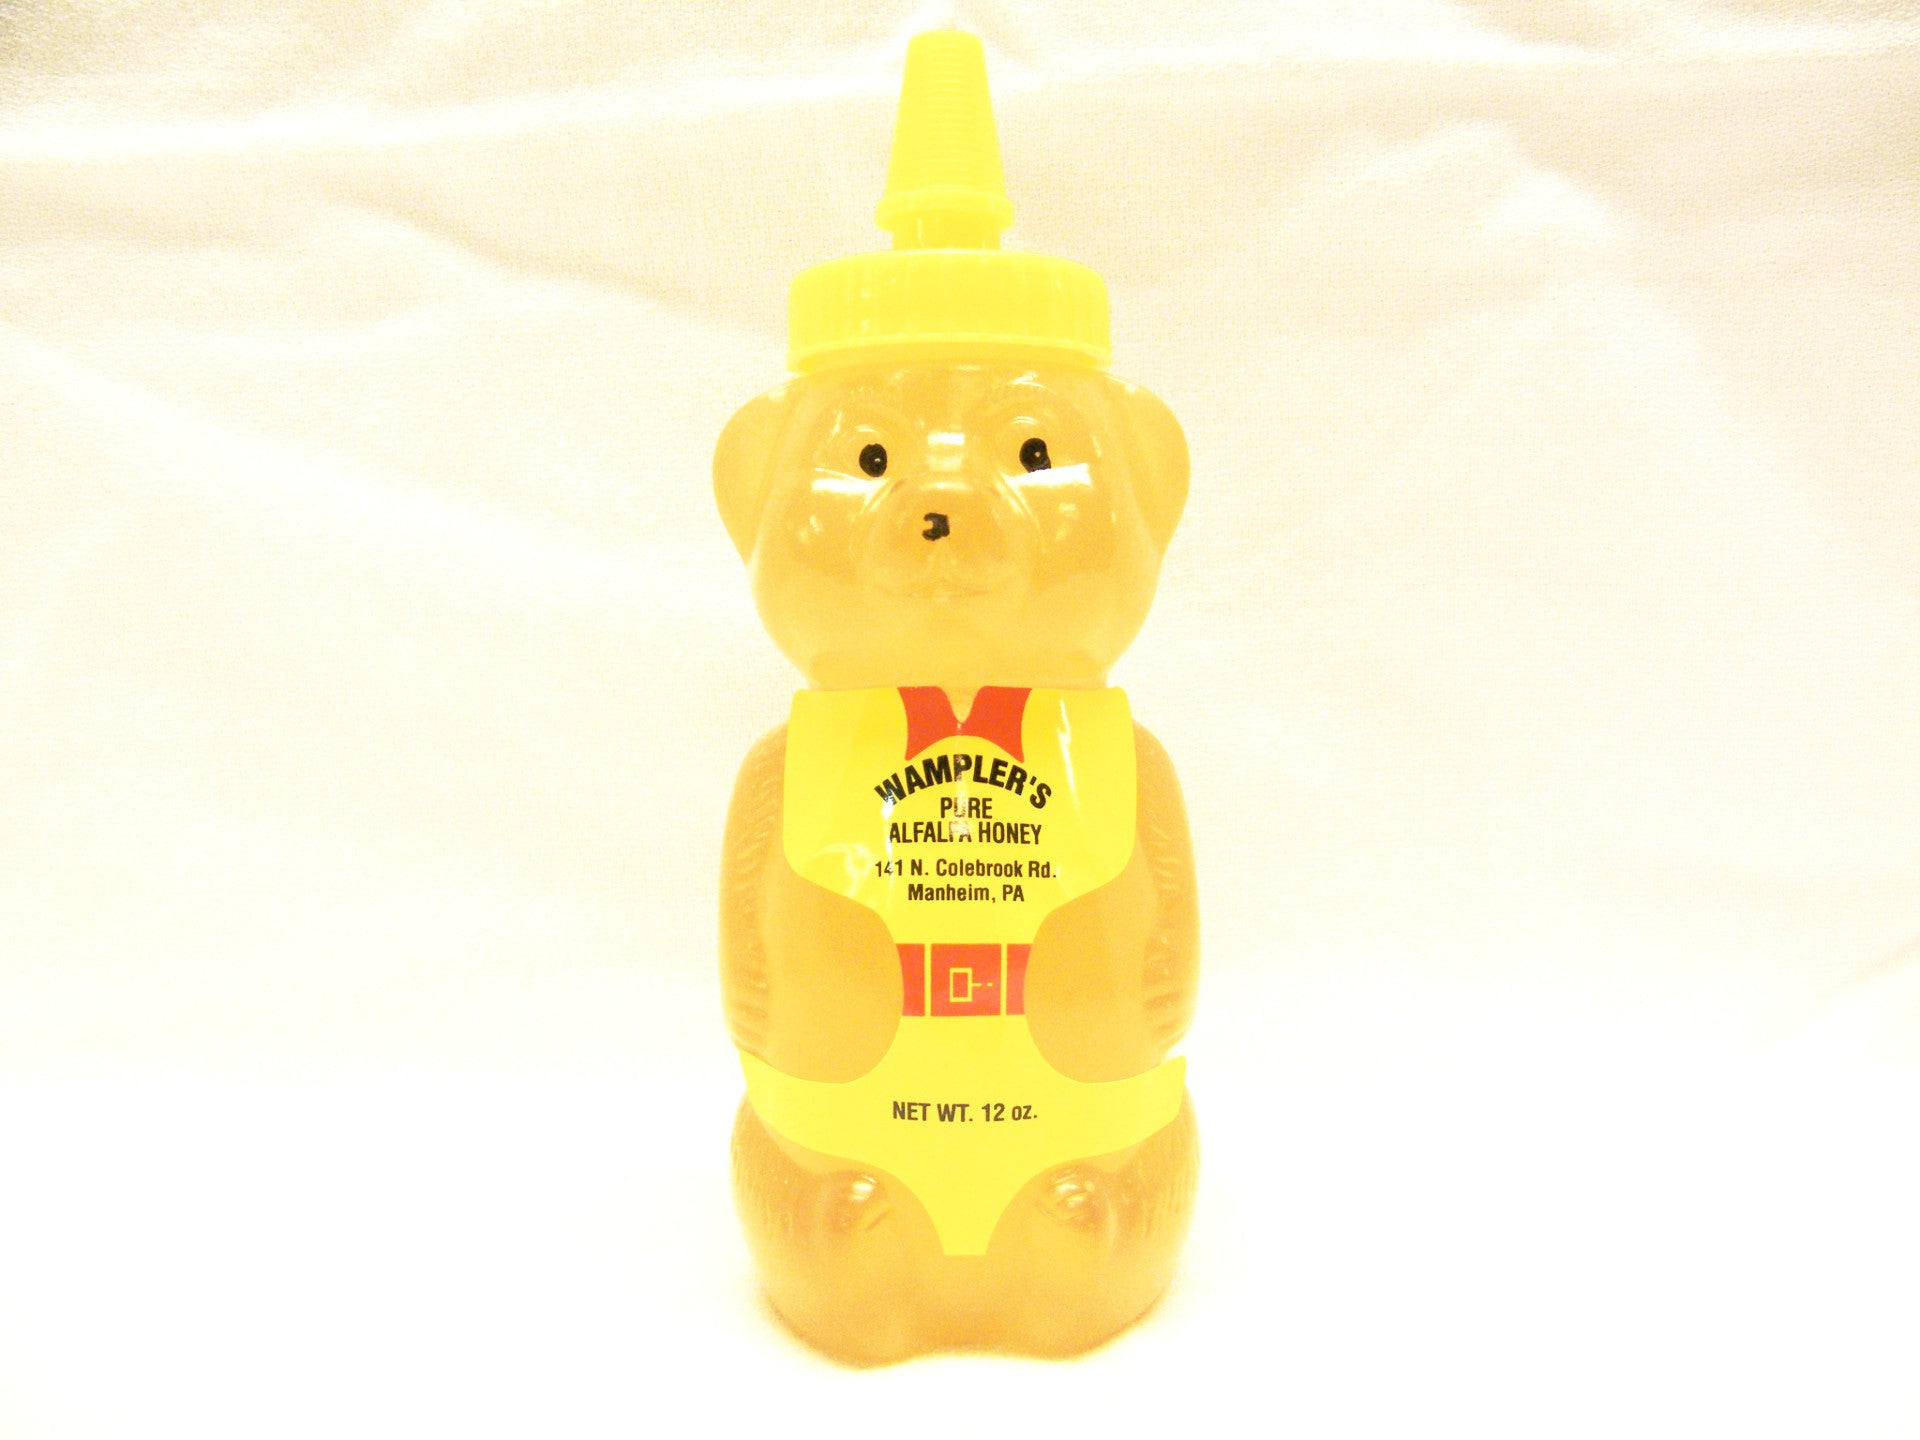 Wampler's Bear Bottle Honey